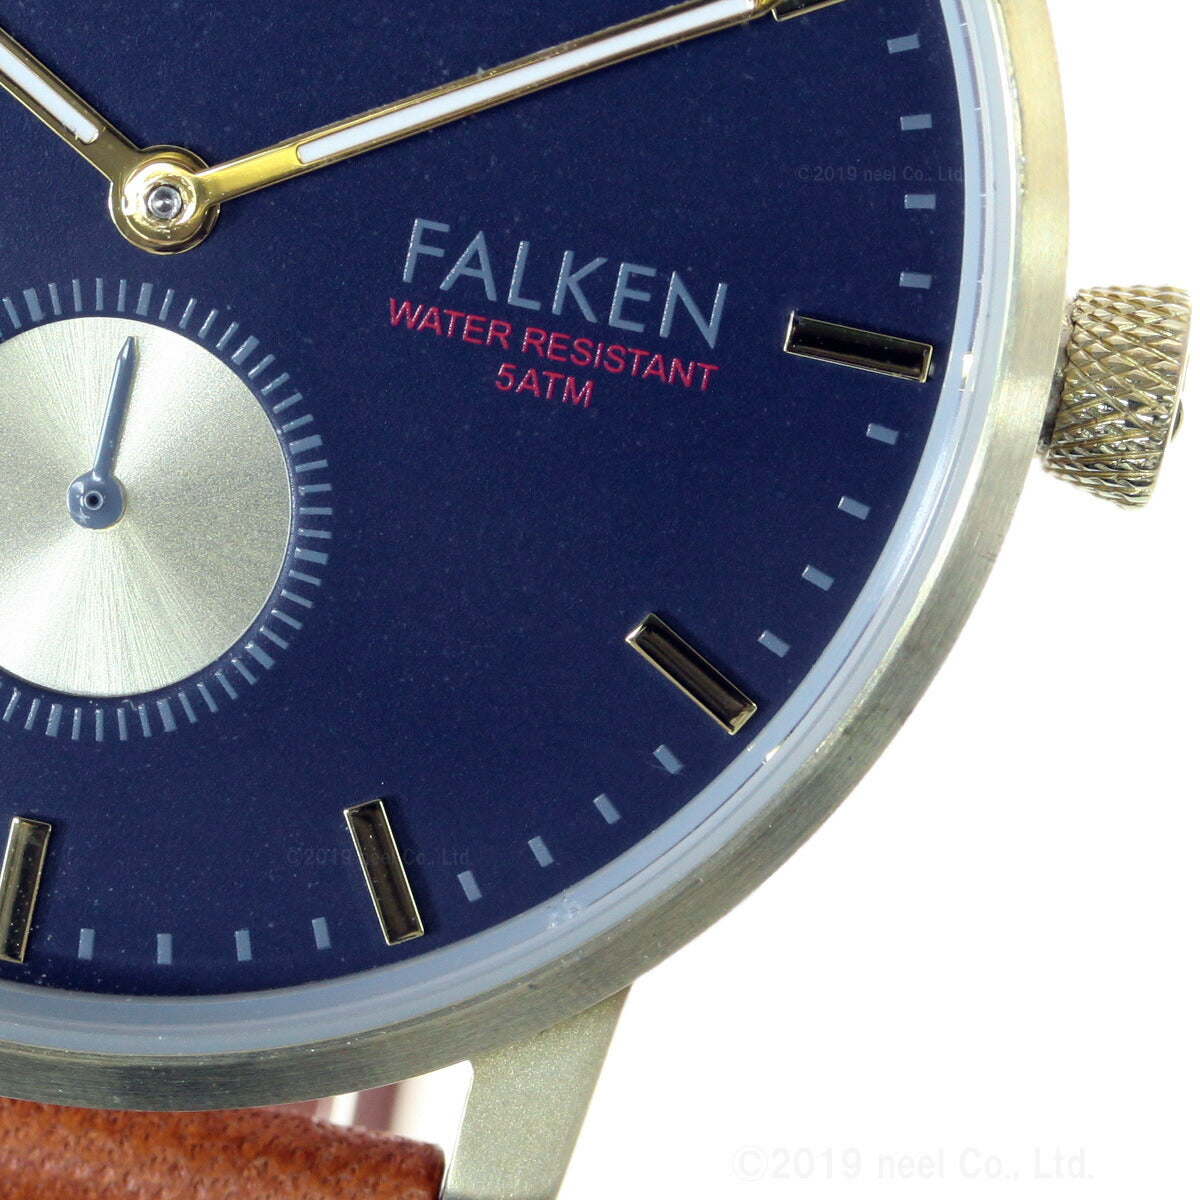 トリワ TRIWA 腕時計 メンズ レディース ロック ファルケン LOCH FALKEN FAST104-CL010217